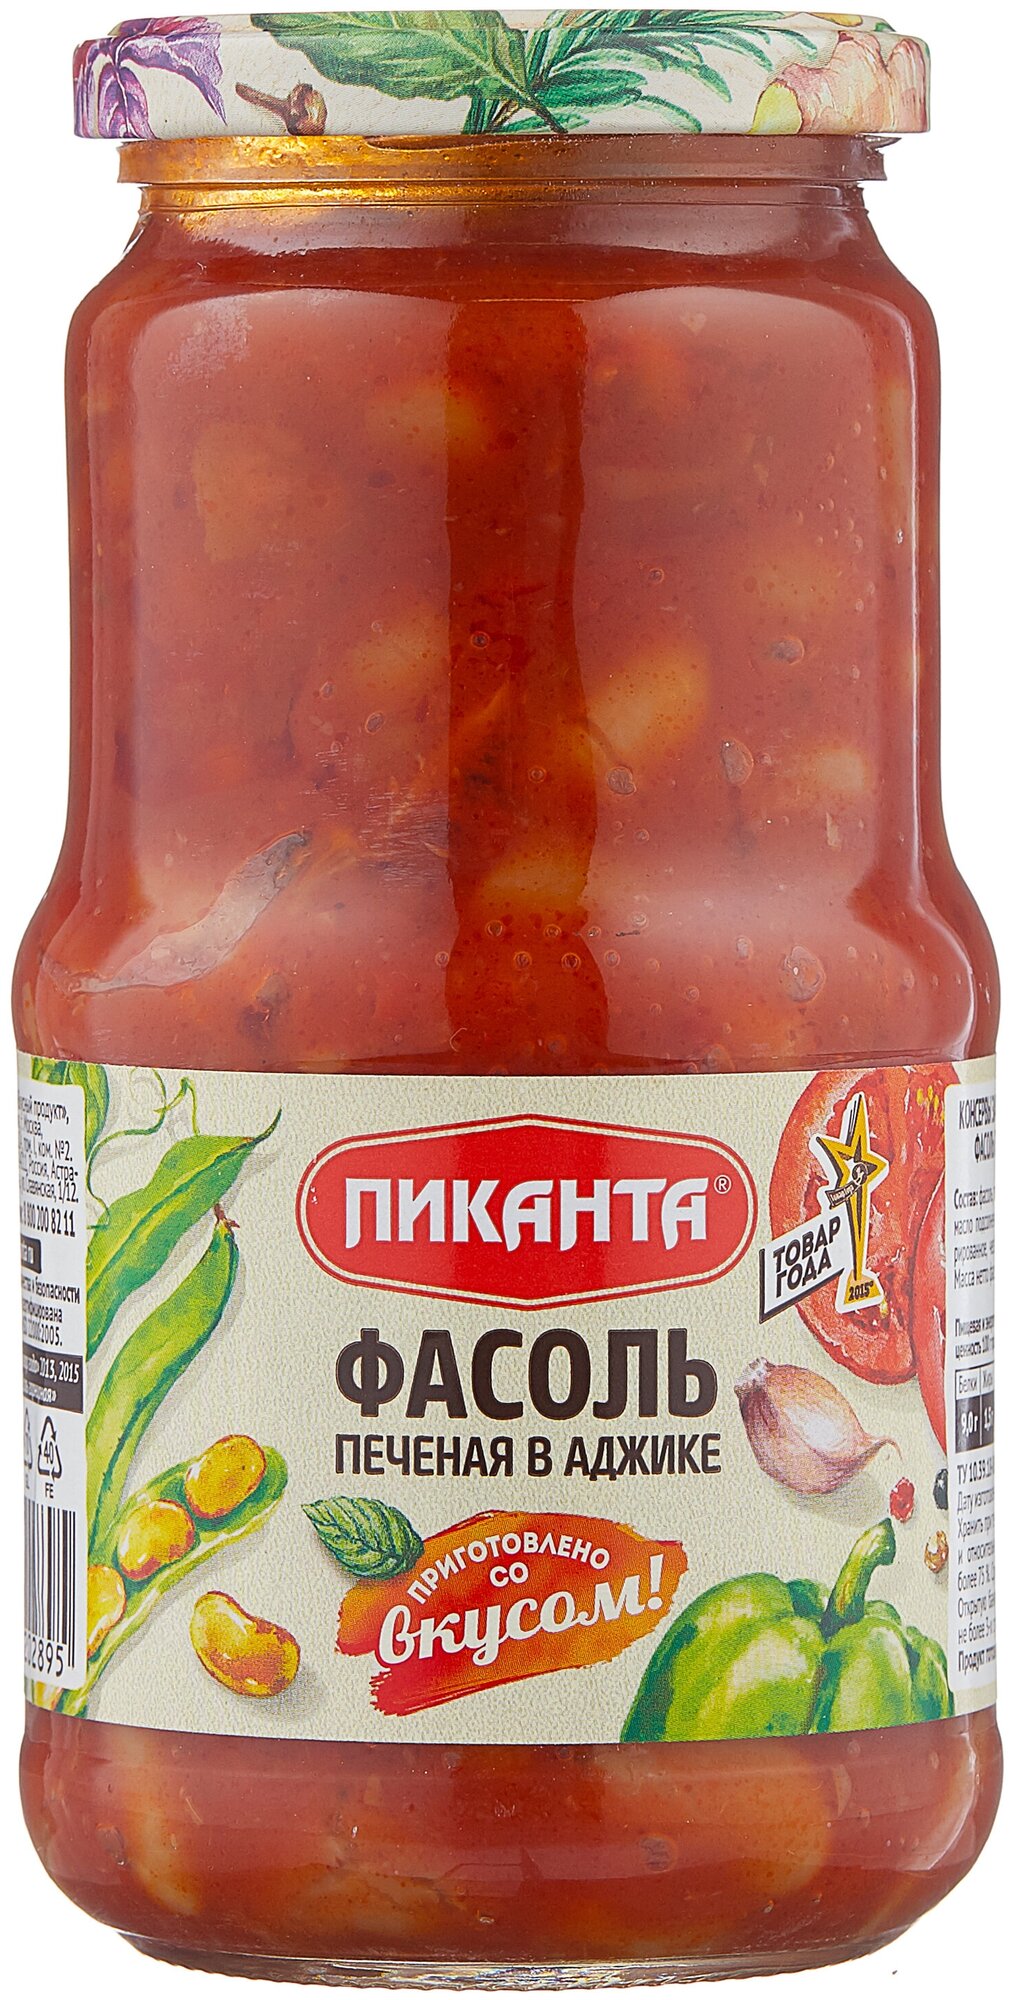 Фасоль Пиканта печёная в аджике, 530 г — купить по выгодной цене на Яндекс.Маркете